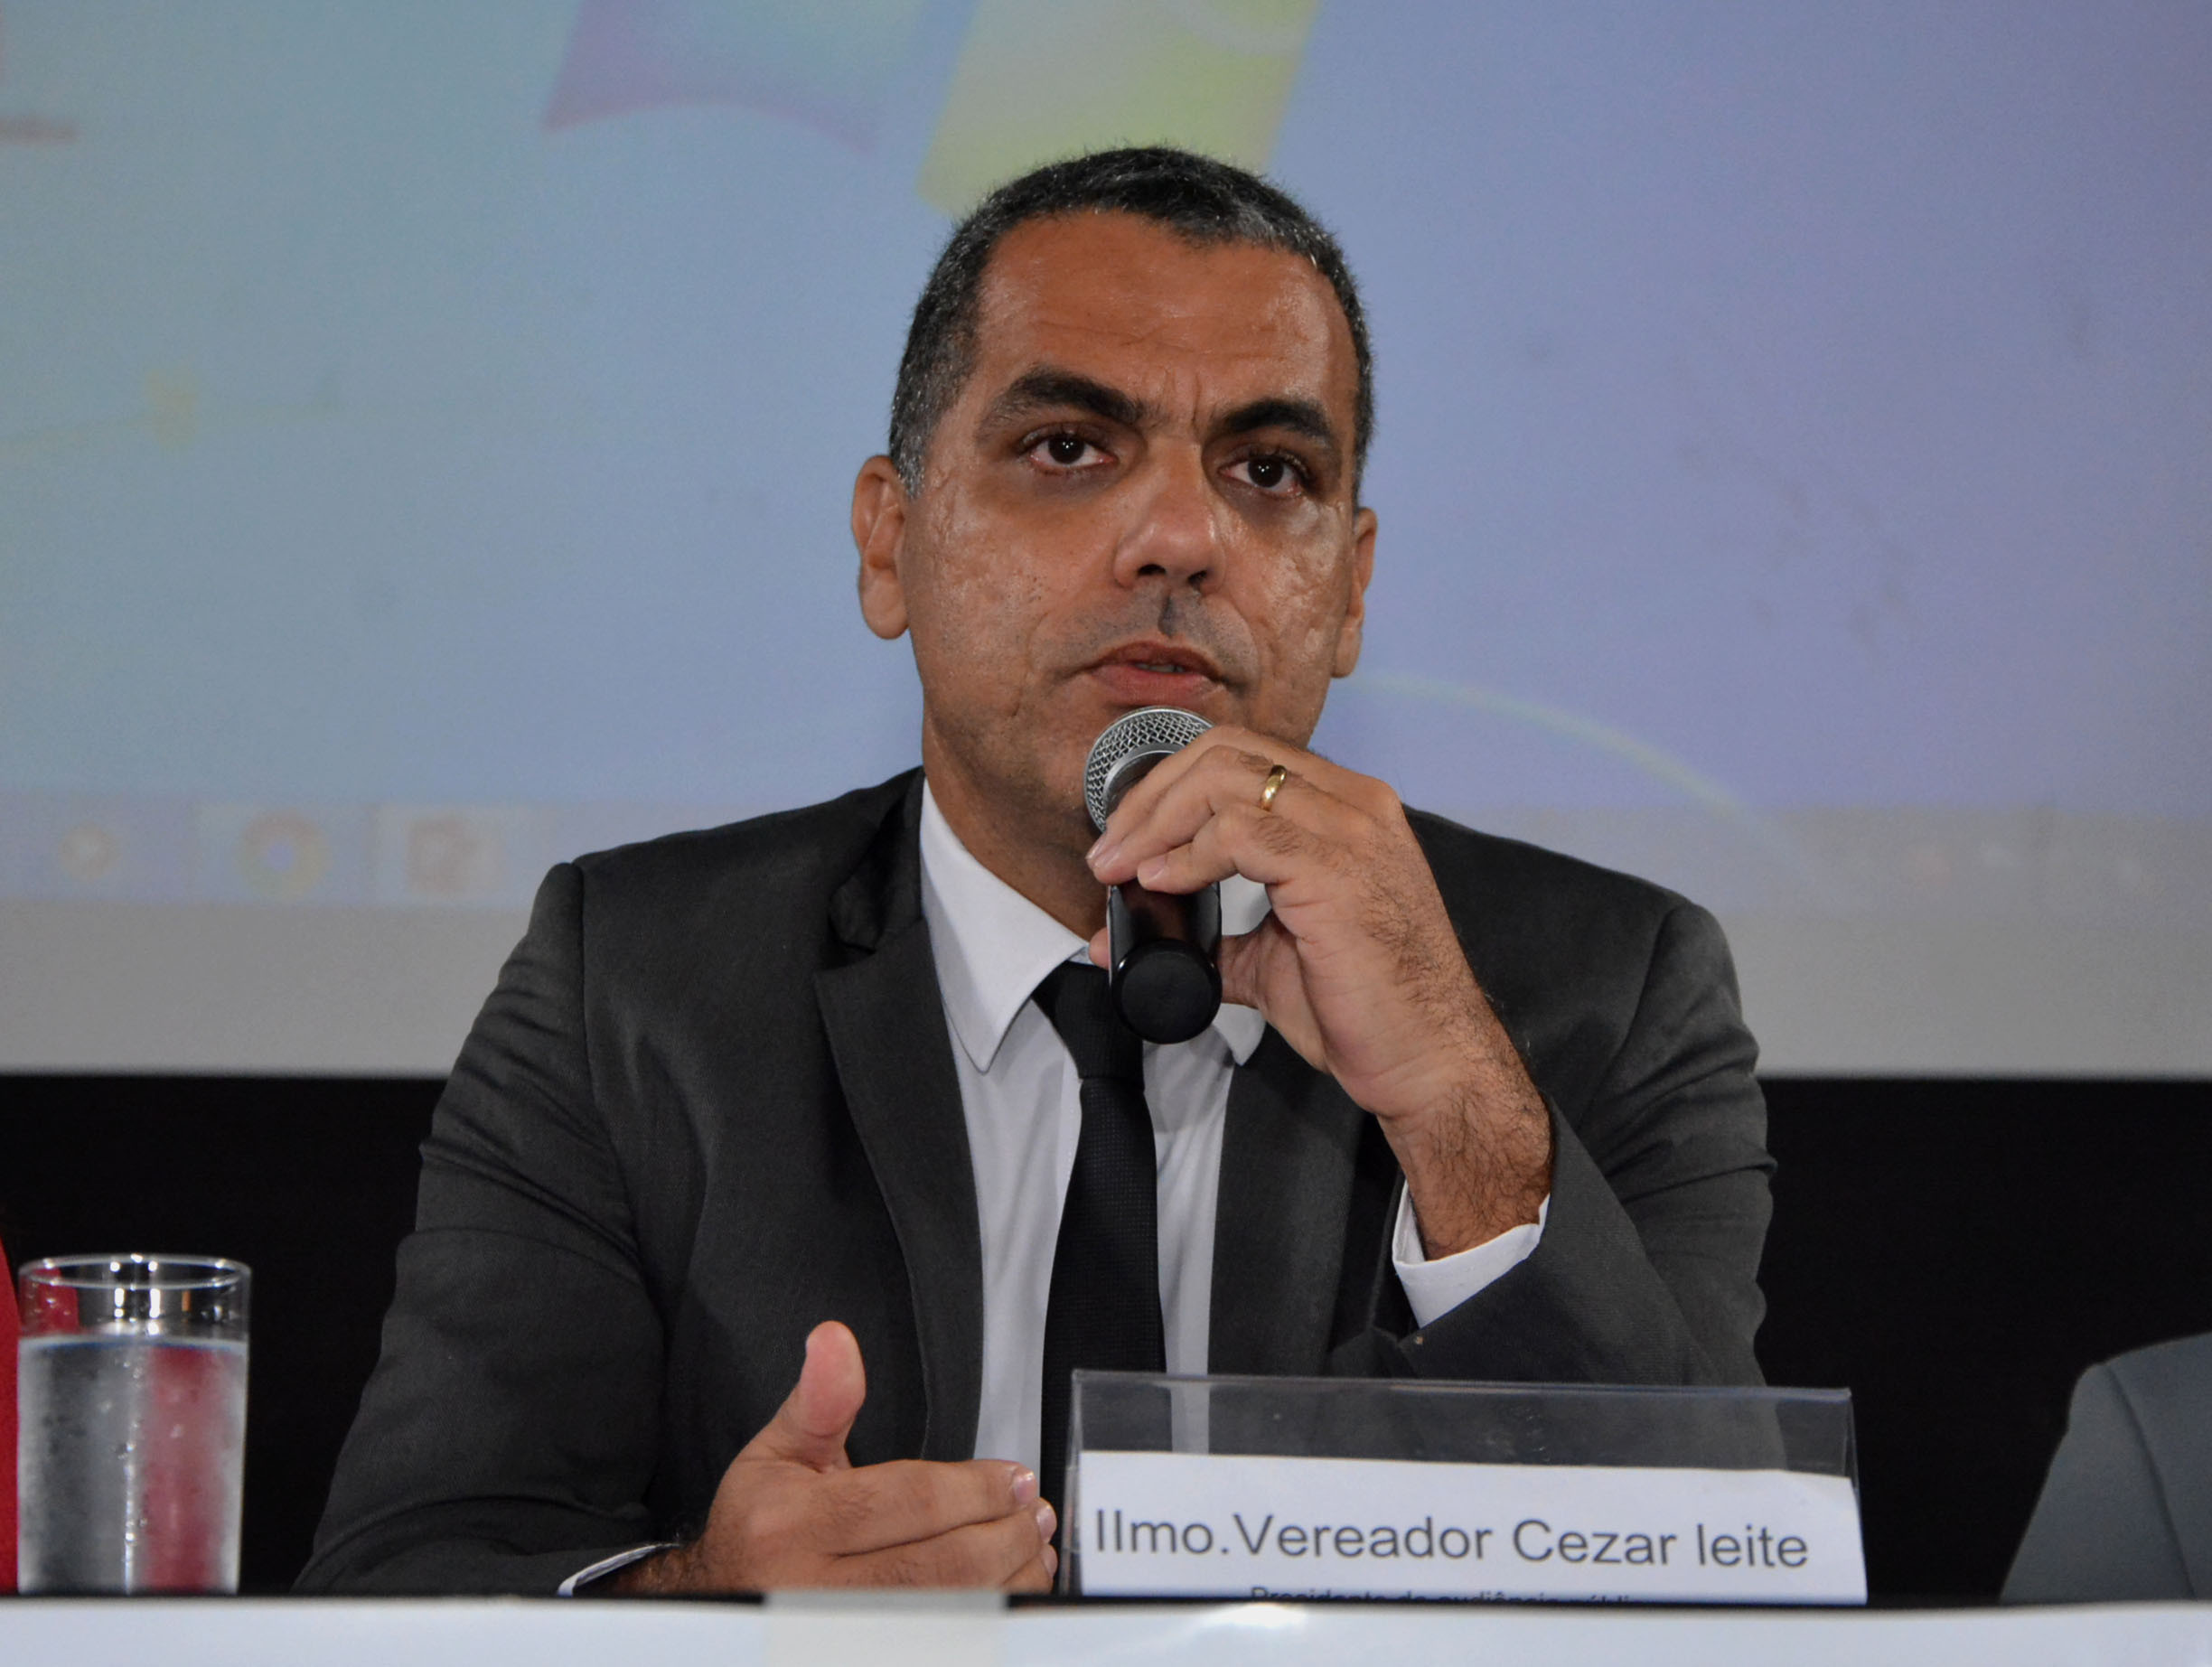 O vereador Cezar Leite, candidato do PRTB a prefeito de Salvador